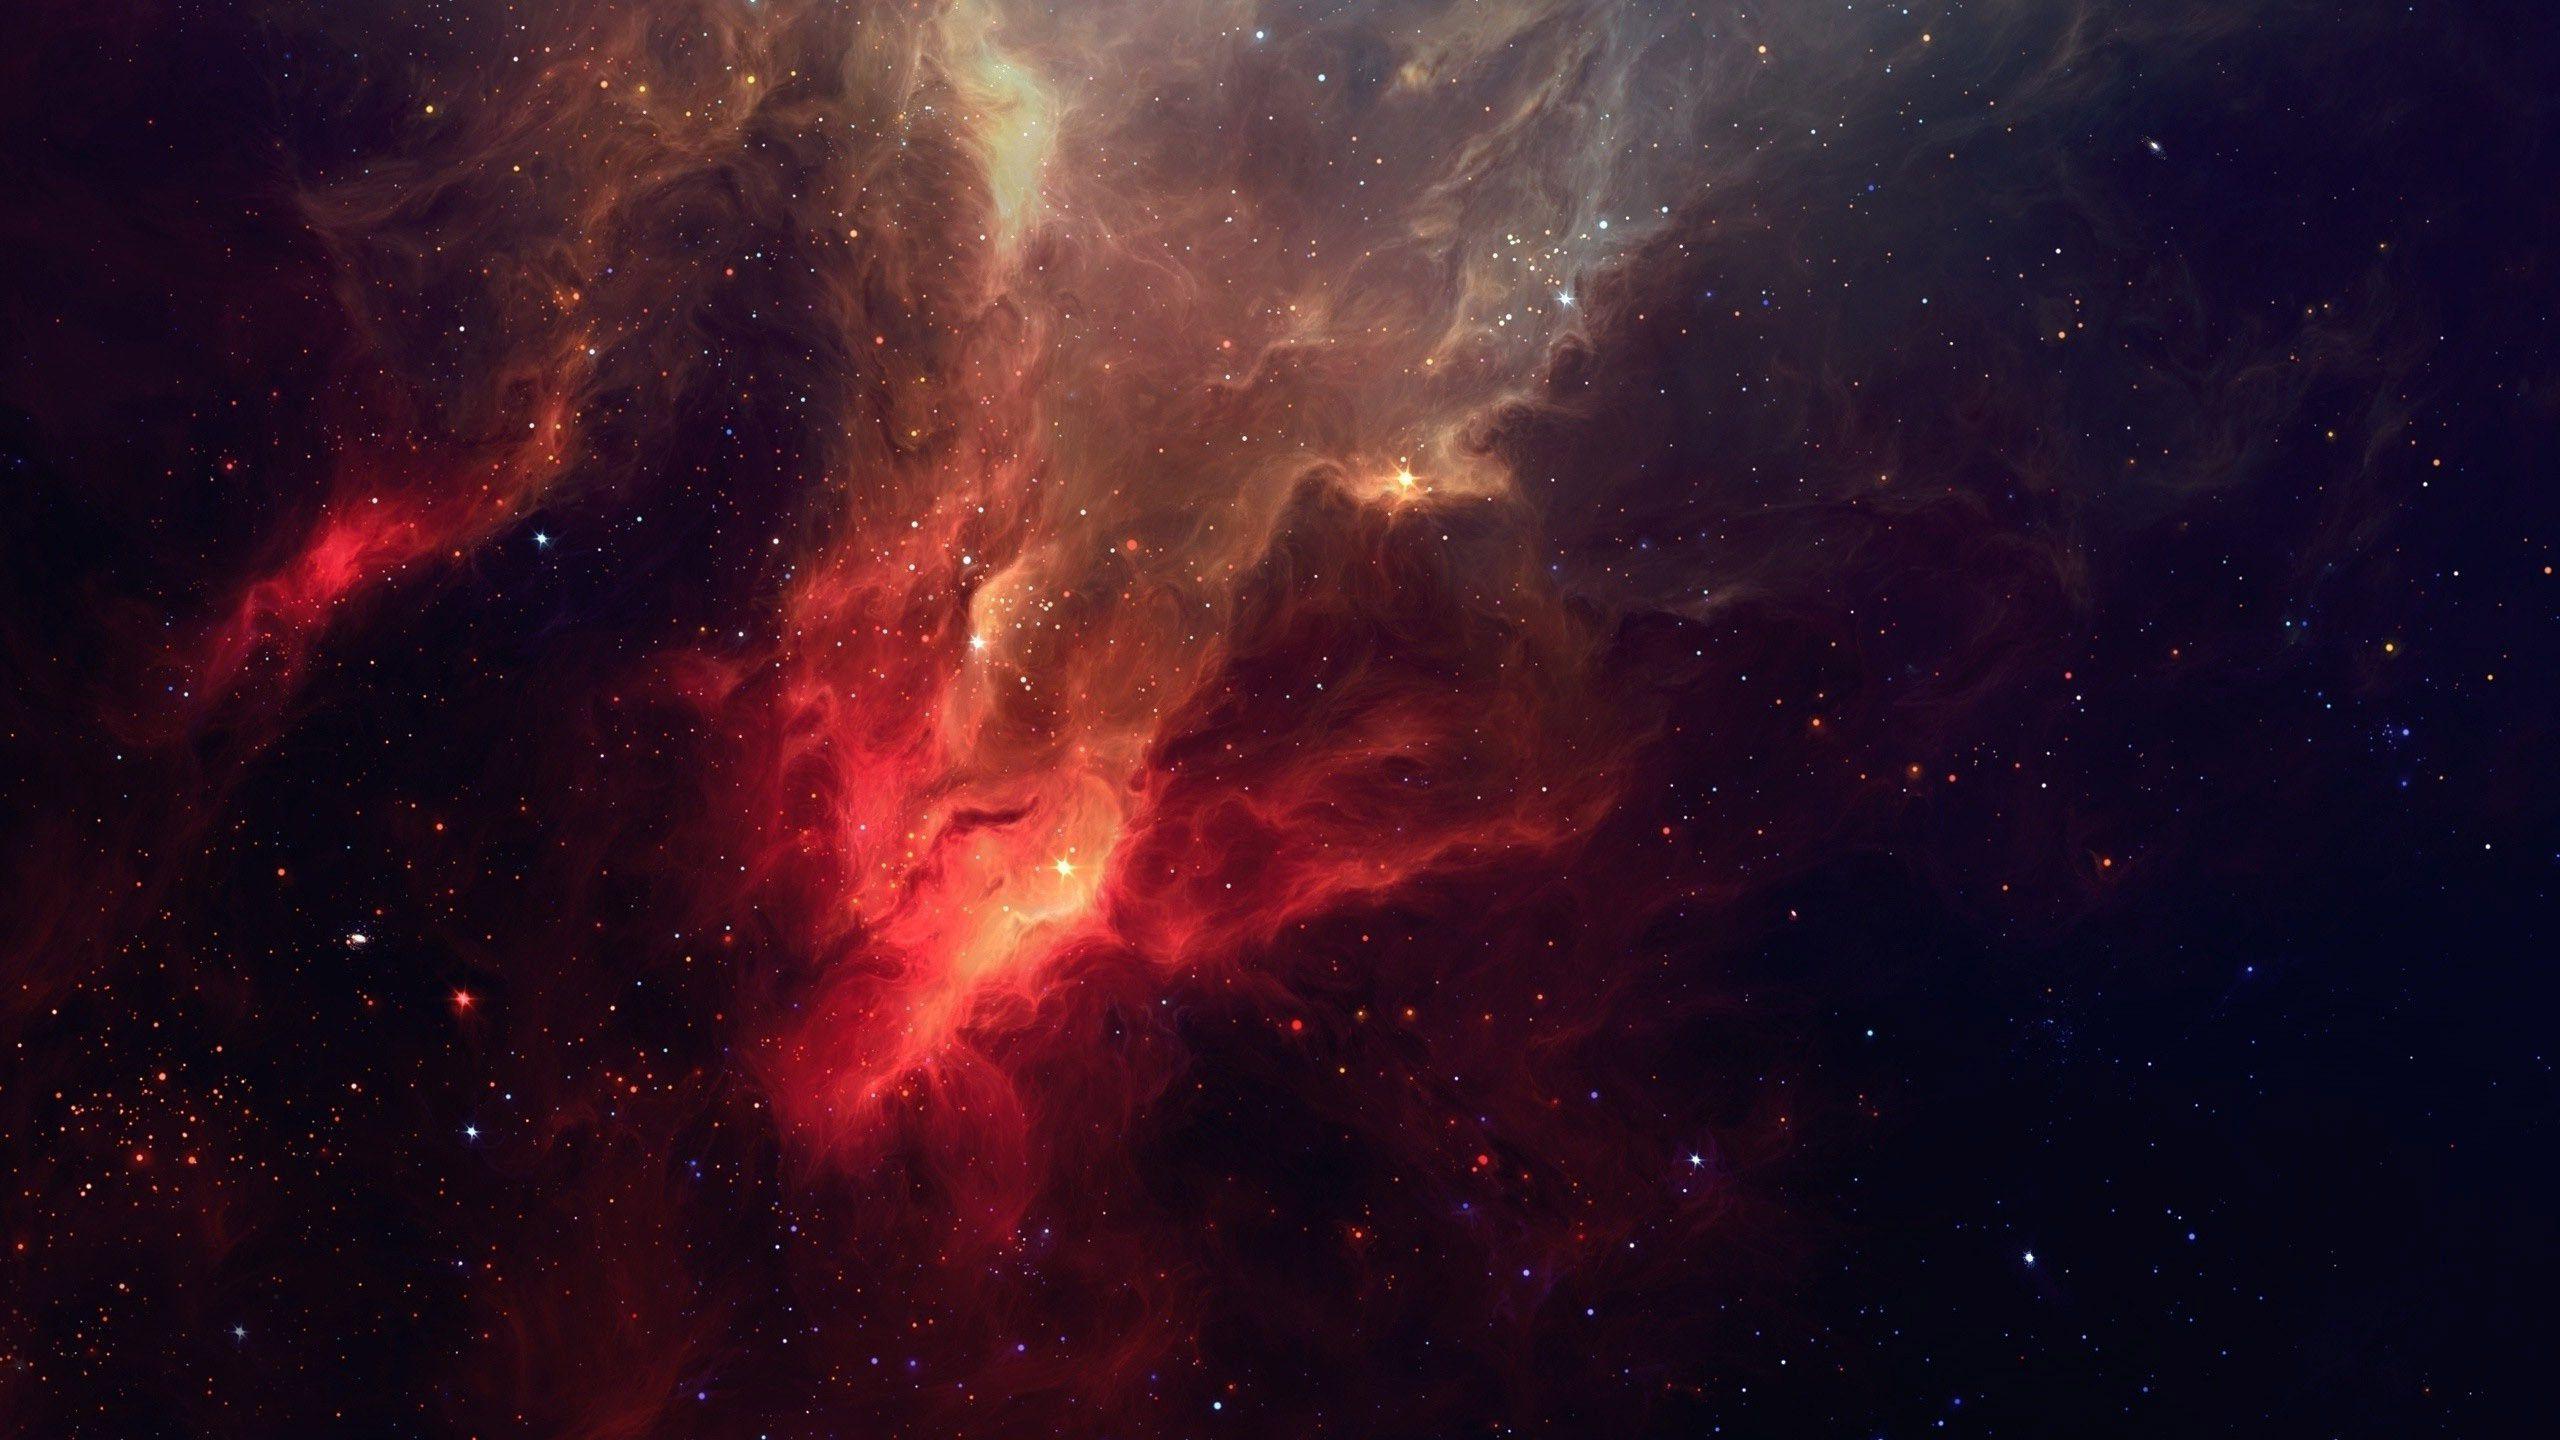 Khám phá không gian đỏ đầy sắc màu với hình ảnh độ phân giải cao 2560X1440 đầy chất lượng và sống động. Hãy chiêm ngưỡng vẻ đẹp tuyệt vời của những vì sao rực rỡ, những cơn bão bụi đỏ rực và vô vàn những hiện tượng kỳ thú trong không gian bao la này.